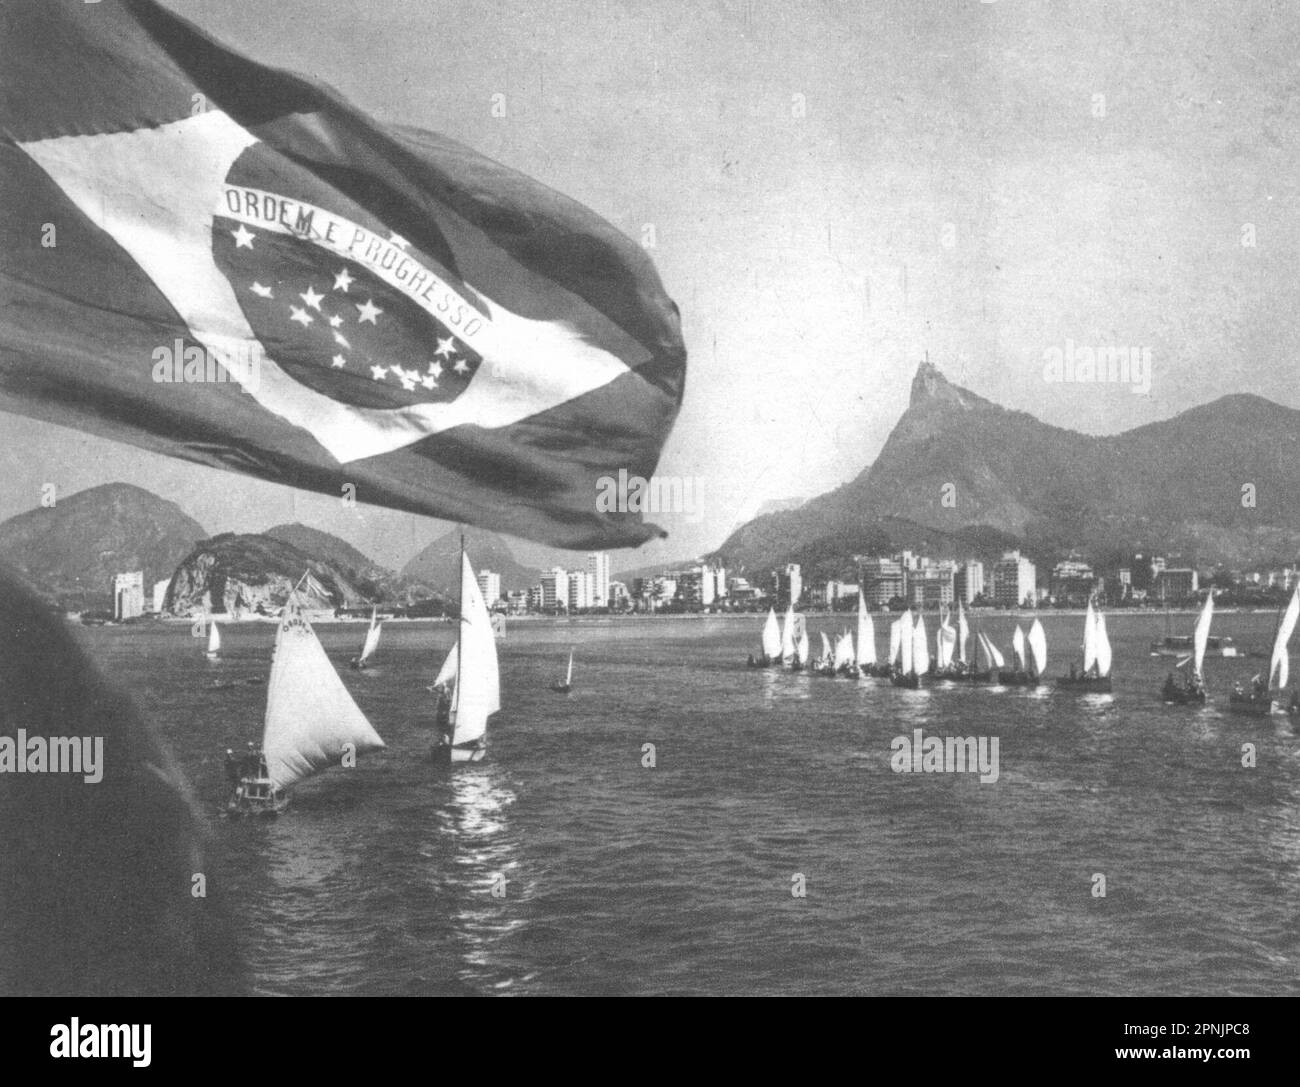 BRÉSIL. Rio de Janeiro. Yachting 1951 ancienne photo d'impression vintage Banque D'Images